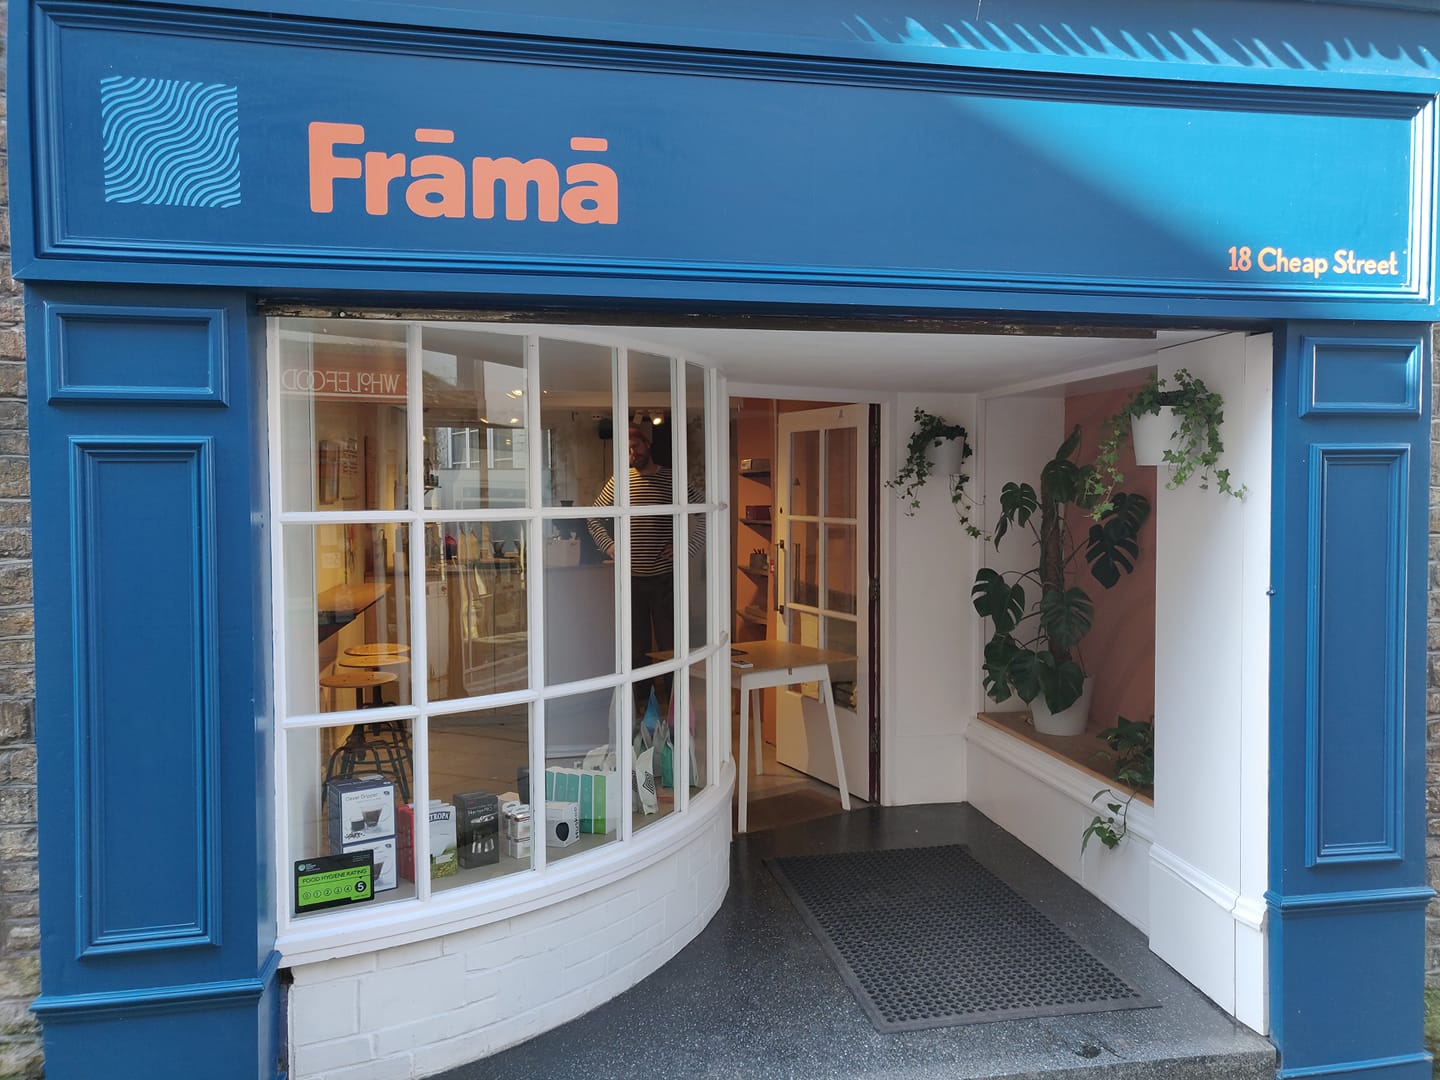 Frama shop front